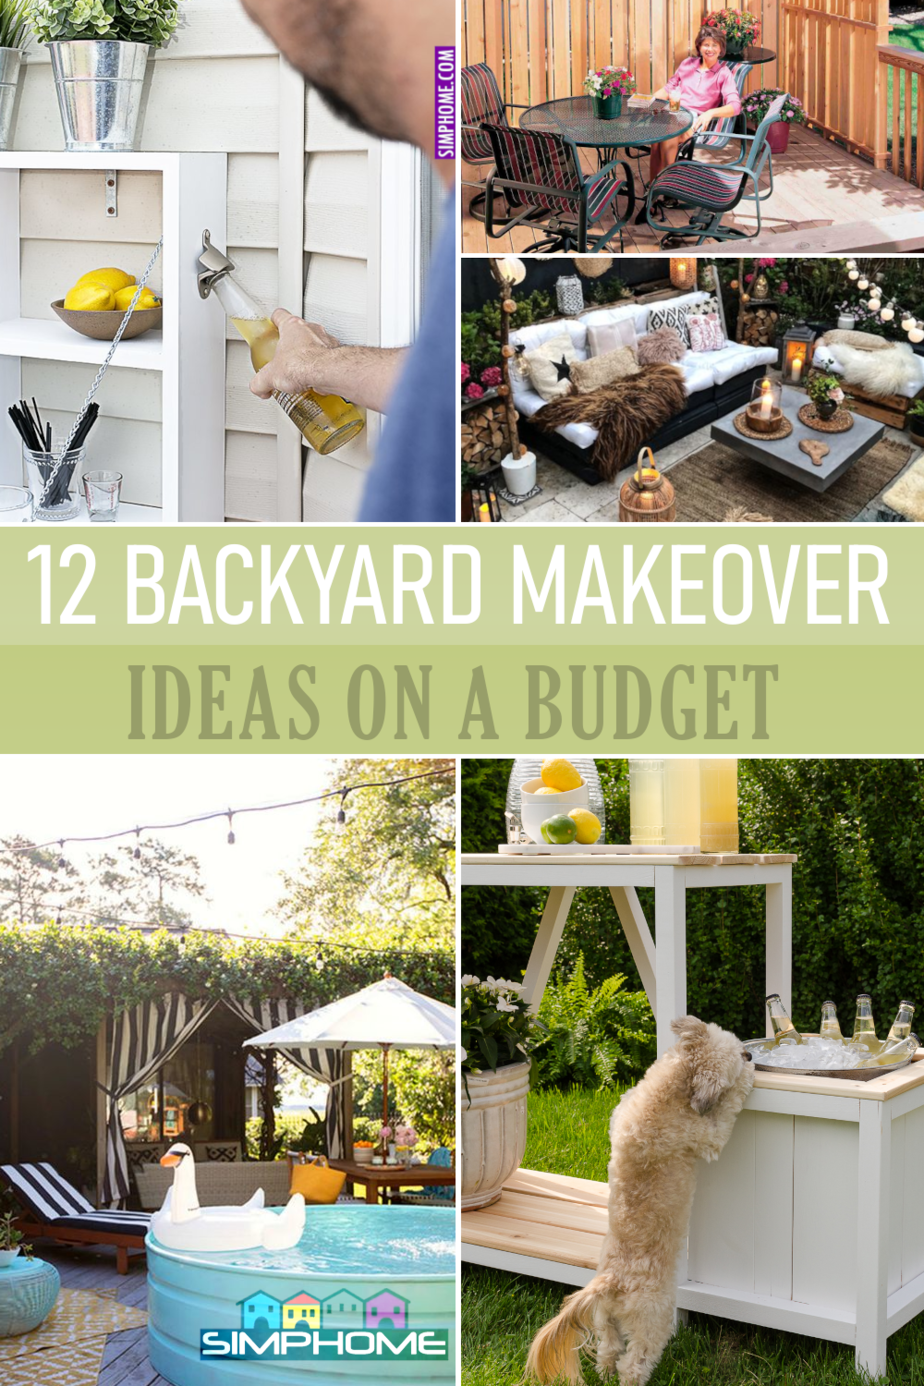 12 DIY Backyard MAKEOVER Ideas via Simphome.com 1000X1500px